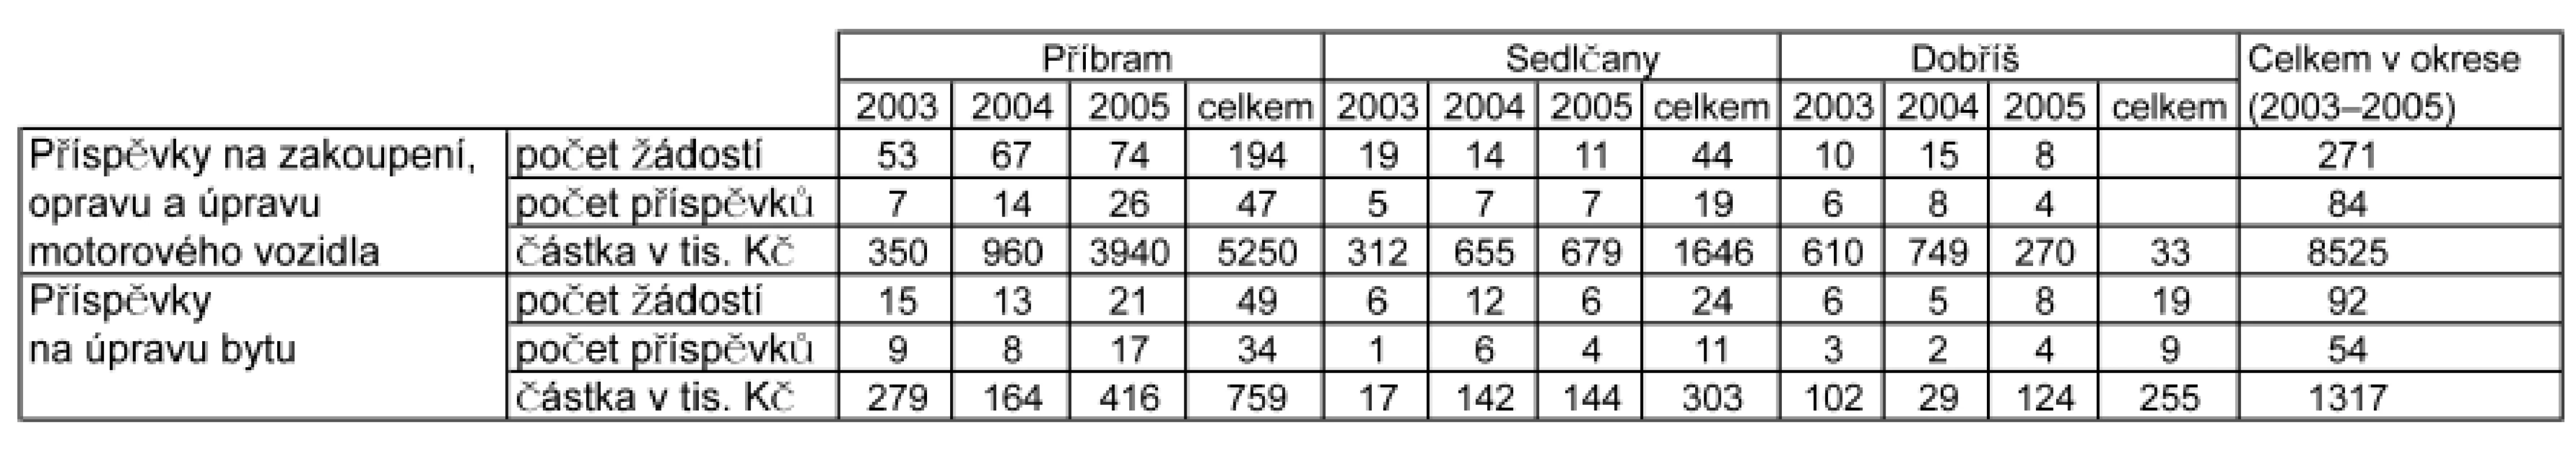 Počet žádostí a příznaných příspěvků na provoz motorového vozidla v letech 2003–2005 v okrese Příbram